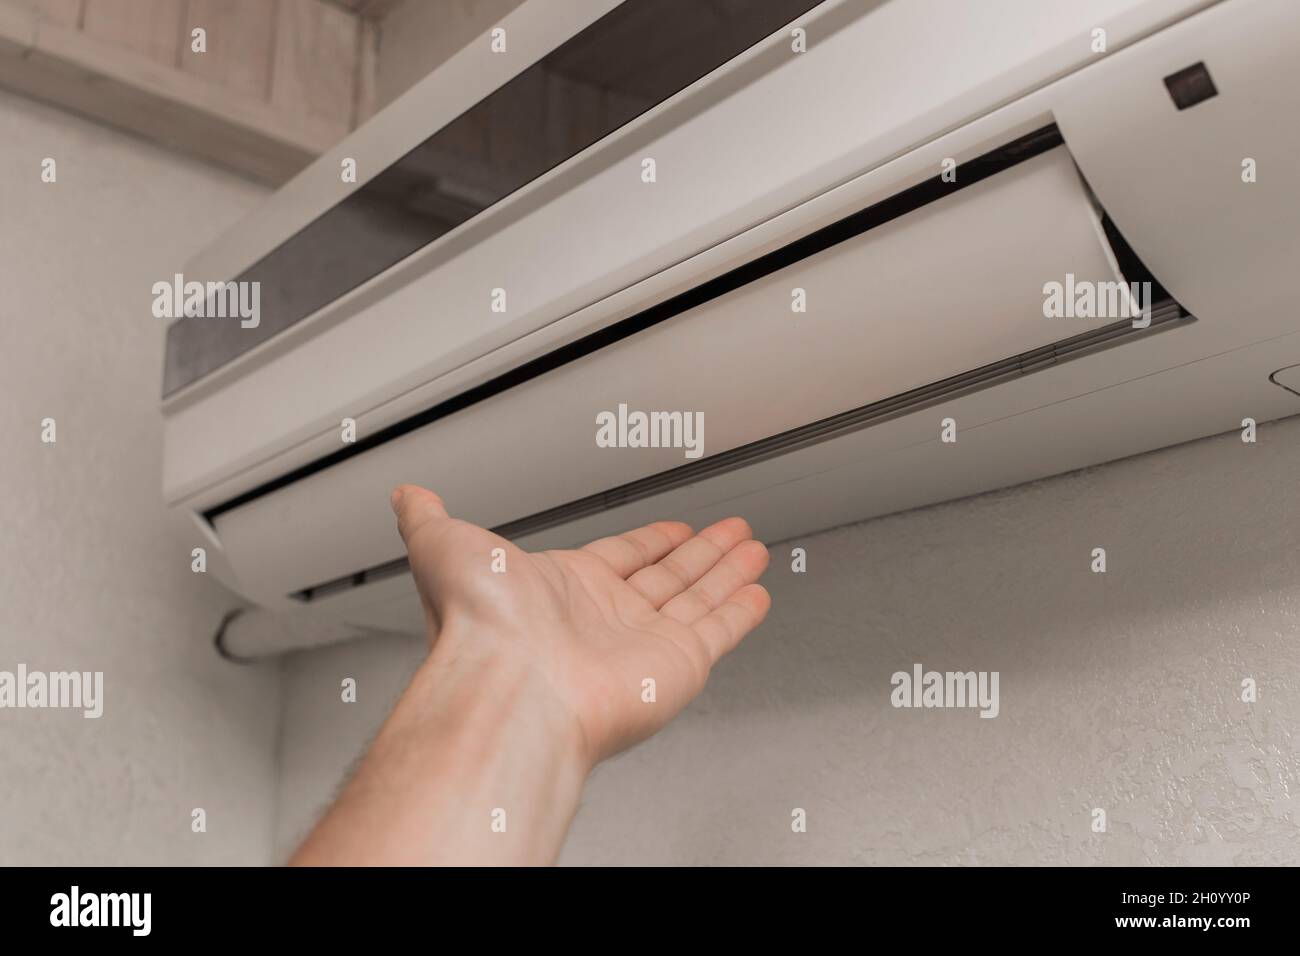 Der Typ legt seine Hand unter die Klimaanlage im Zimmer, um die Temperatur und das Gefühl von warmer oder kalter Luft zu überprüfen. Stockfoto